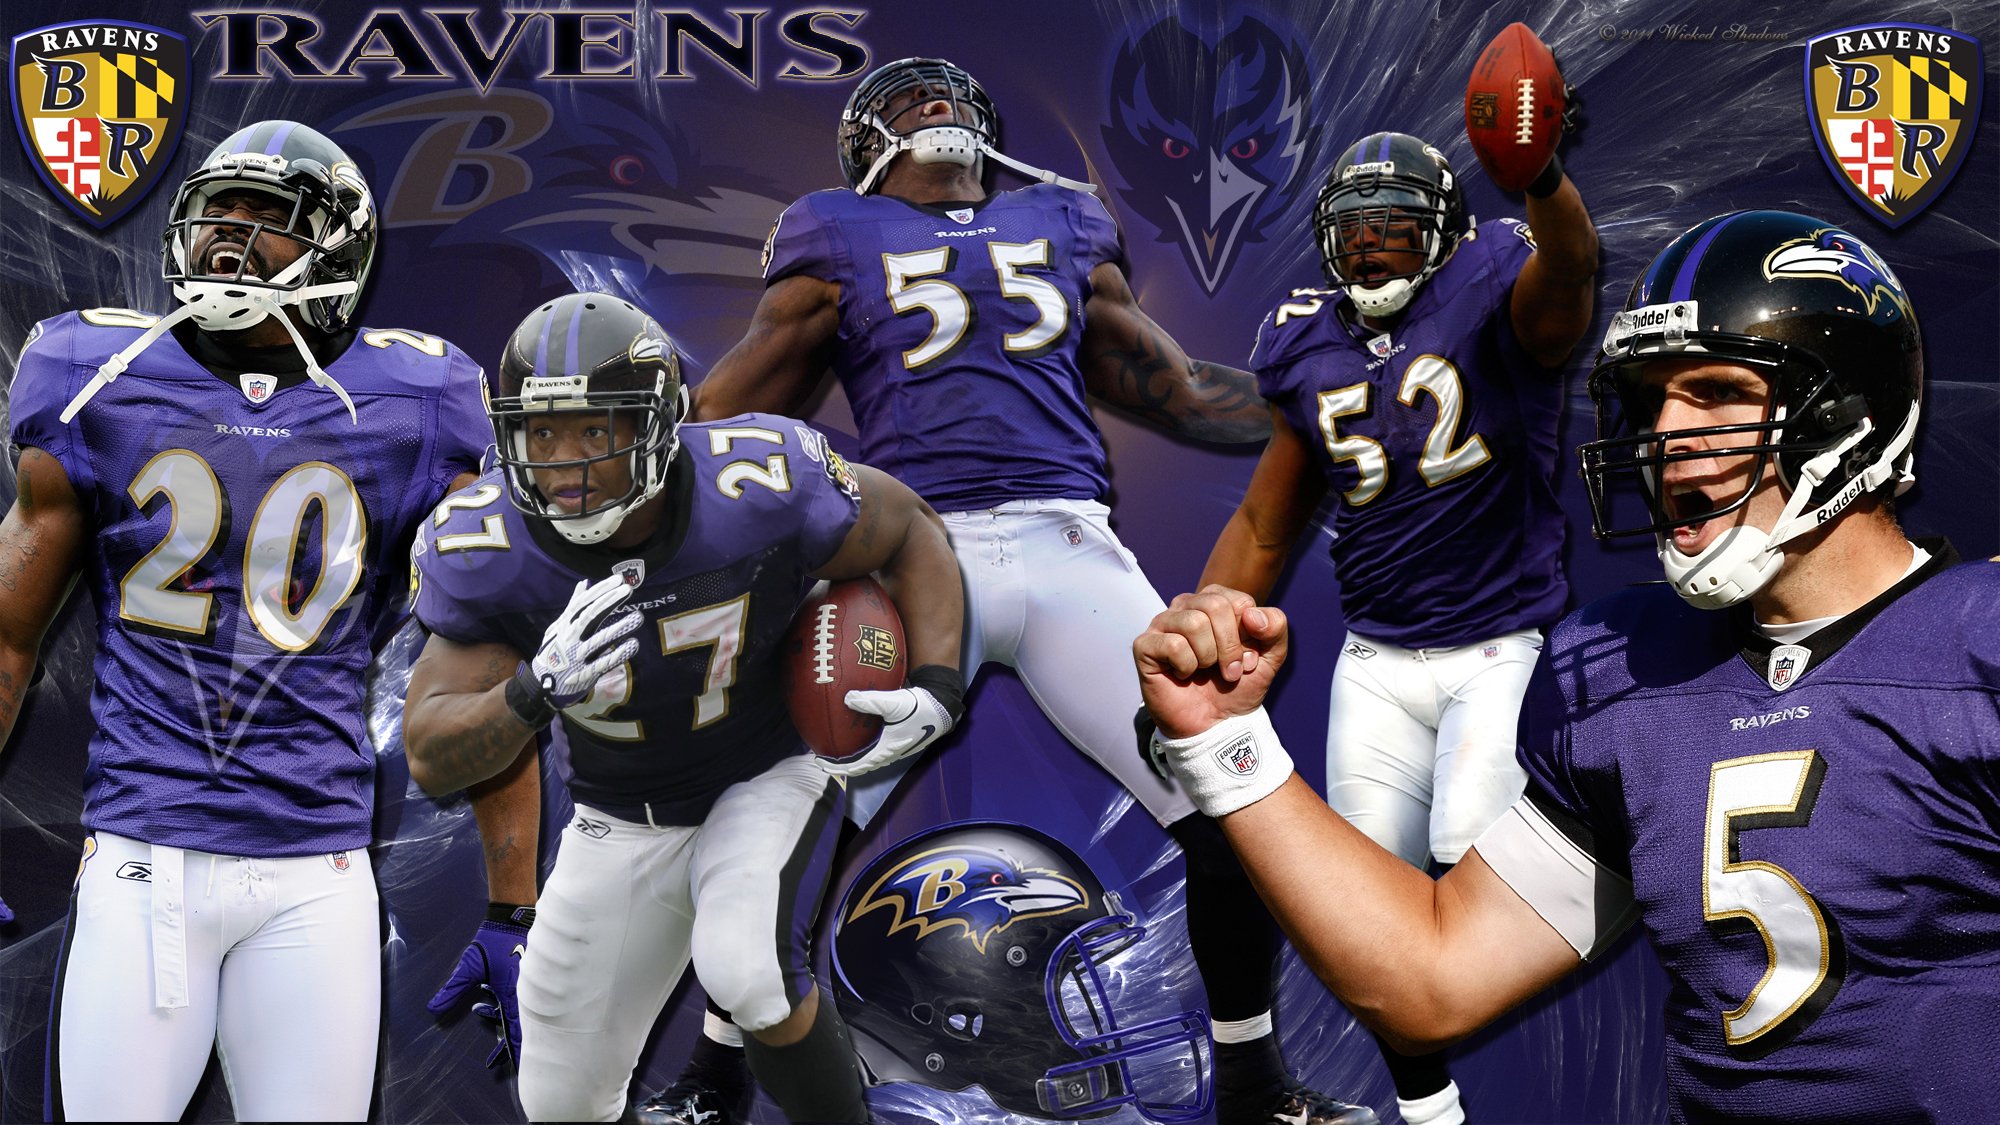 Baltimore Ravens Wallpaper